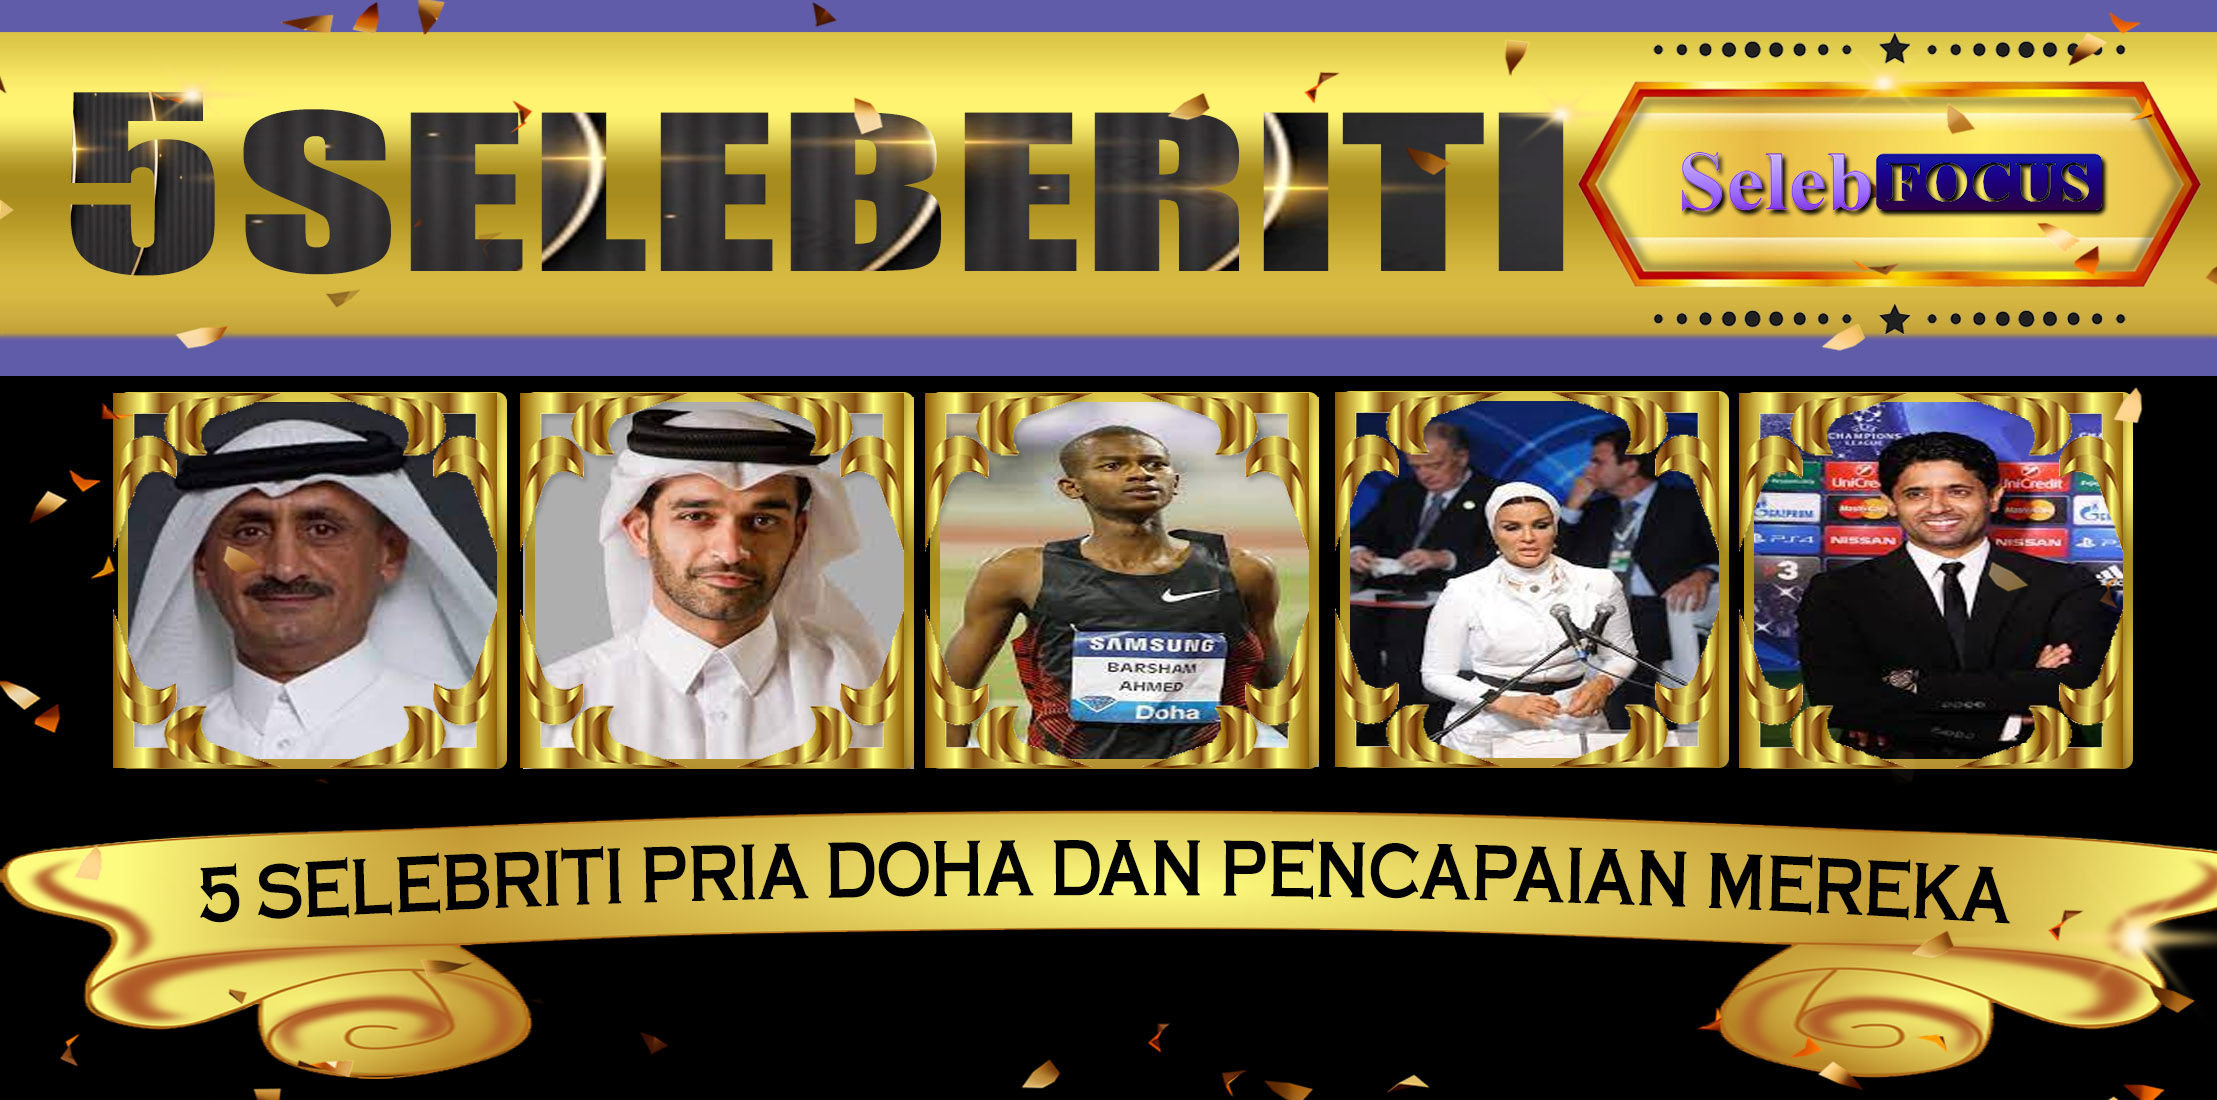 5 Selebriti Pria Doha dan Pencapaian Mereka